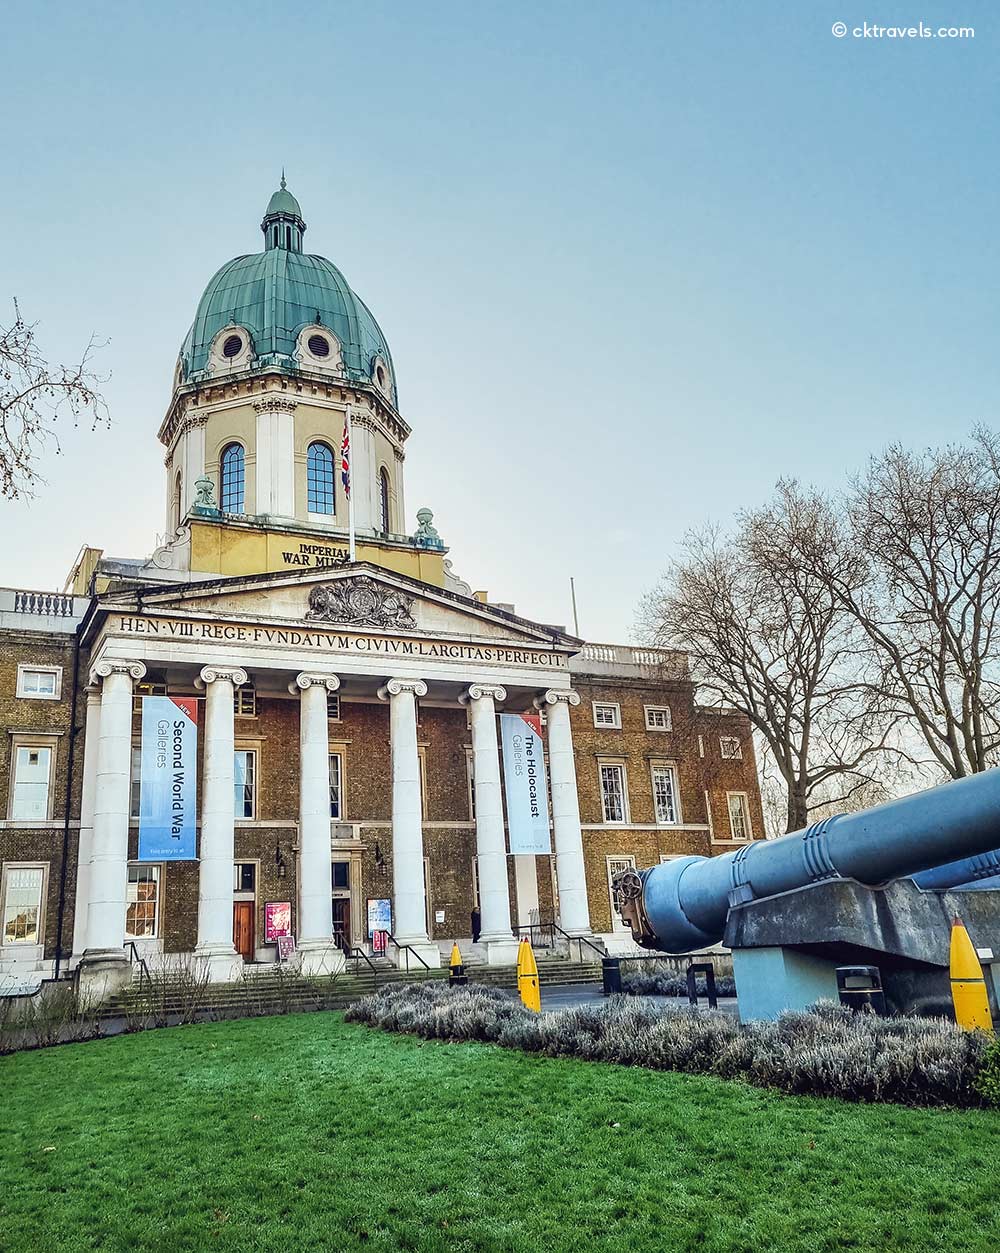 Imperial War Museum London near Waterloo Station London